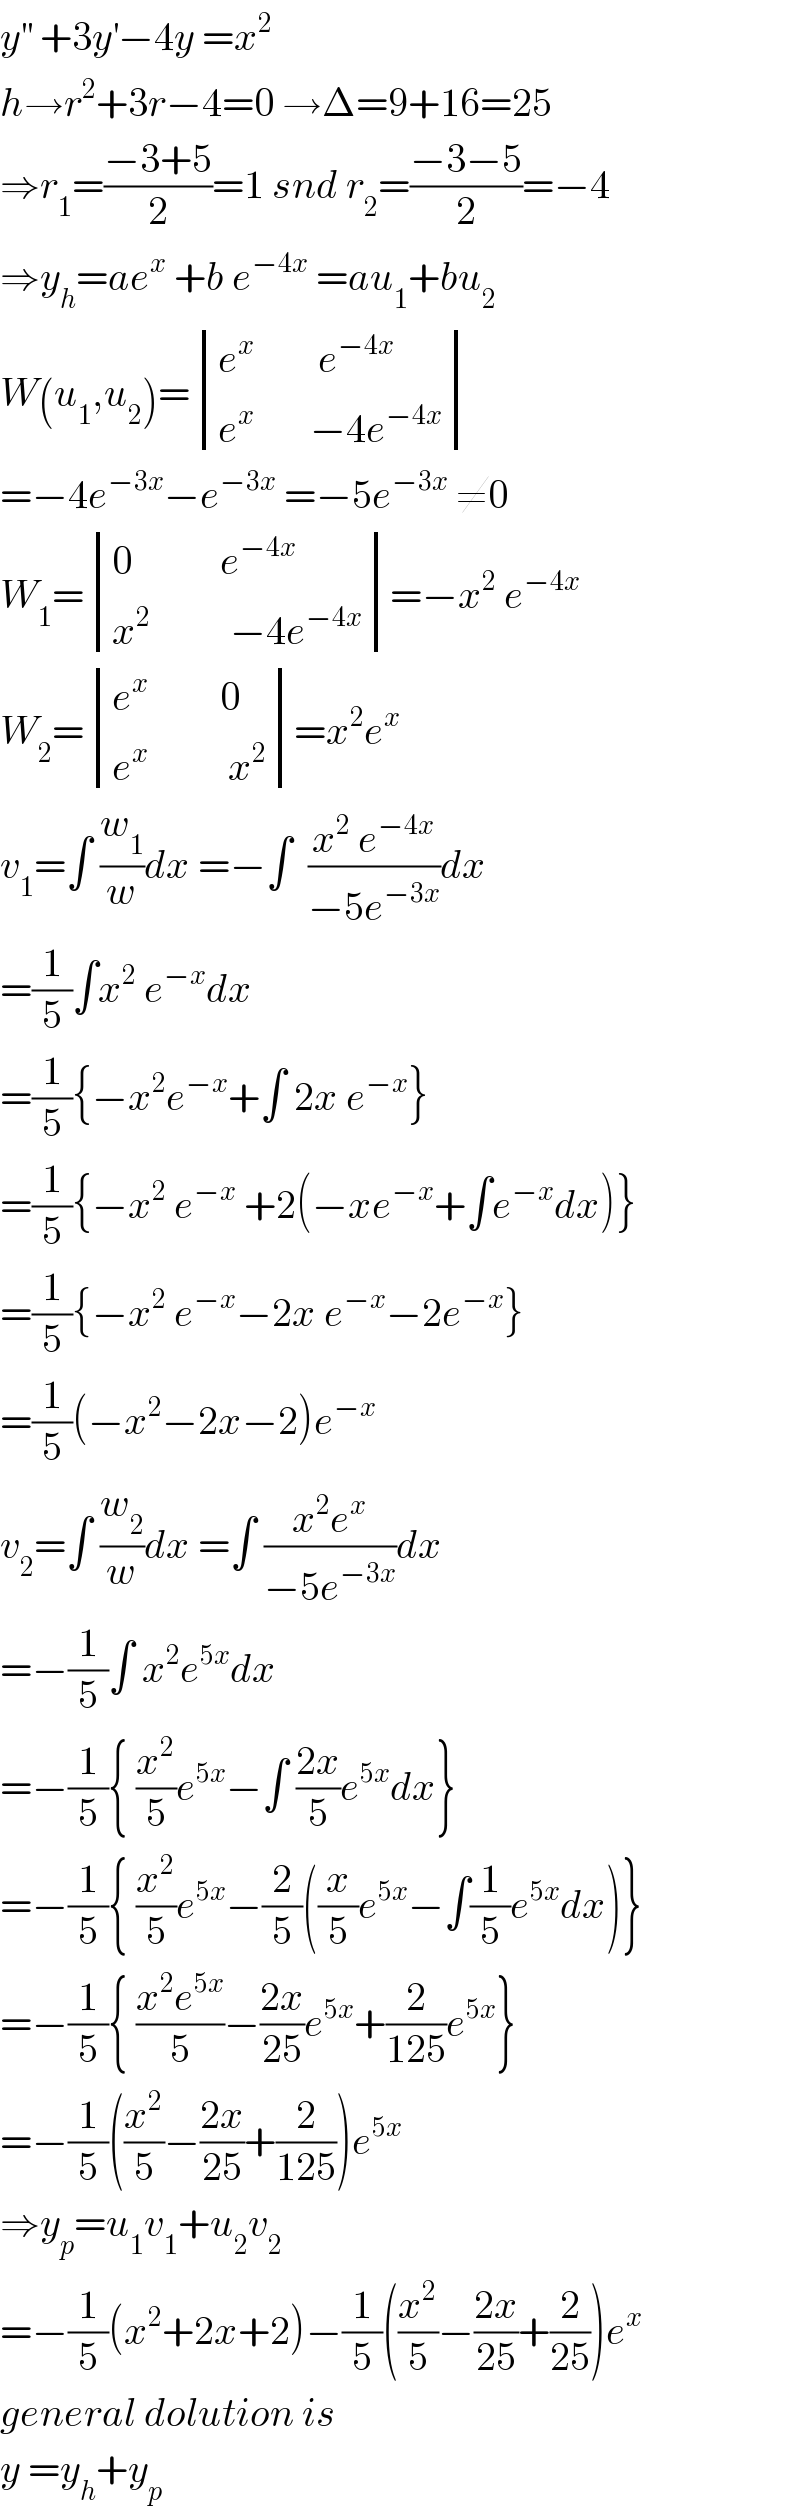 y^(′′)  +3y^′ −4y =x^2   h→r^2 +3r−4=0 →Δ=9+16=25  ⇒r_1 =((−3+5)/2)=1 snd r_2 =((−3−5)/2)=−4  ⇒y_h =ae^x  +b e^(−4x)  =au_1 +bu_2   W(u_1 ,u_2 )= determinant (((e^x         e^(−4x) )),((e^x        −4e^(−4x) )))  =−4e^(−3x) −e^(−3x)  =−5e^(−3x)  ≠0  W_1 = determinant (((0           e^(−4x) )),((x^2           −4e^(−4x) )))=−x^2  e^(−4x)   W_2 = determinant (((e^x          0)),((e^x           x^2 )))=x^2 e^x   v_1 =∫ (w_1 /w)dx =−∫  ((x^2  e^(−4x) )/(−5e^(−3x) ))dx  =(1/5)∫x^2  e^(−x) dx  =(1/5){−x^2 e^(−x) +∫ 2x e^(−x) }  =(1/5){−x^2  e^(−x)  +2(−xe^(−x) +∫e^(−x) dx)}  =(1/5){−x^2  e^(−x) −2x e^(−x) −2e^(−x) }  =(1/5)(−x^2 −2x−2)e^(−x)   v_2 =∫ (w_2 /w)dx =∫ ((x^2 e^x )/(−5e^(−3x) ))dx  =−(1/5)∫ x^2 e^(5x) dx  =−(1/5){ (x^2 /5)e^(5x) −∫ ((2x)/5)e^(5x) dx}  =−(1/5){ (x^2 /5)e^(5x) −(2/5)((x/5)e^(5x) −∫(1/5)e^(5x) dx)}  =−(1/5){ ((x^2 e^(5x) )/5)−((2x)/(25))e^(5x) +(2/(125))e^(5x) }  =−(1/5)((x^2 /5)−((2x)/(25))+(2/(125)))e^(5x)   ⇒y_p =u_1 v_1 +u_2 v_2   =−(1/5)(x^2 +2x+2)−(1/5)((x^2 /5)−((2x)/(25))+(2/(25)))e^x   general dolution is  y =y_h +y_p   